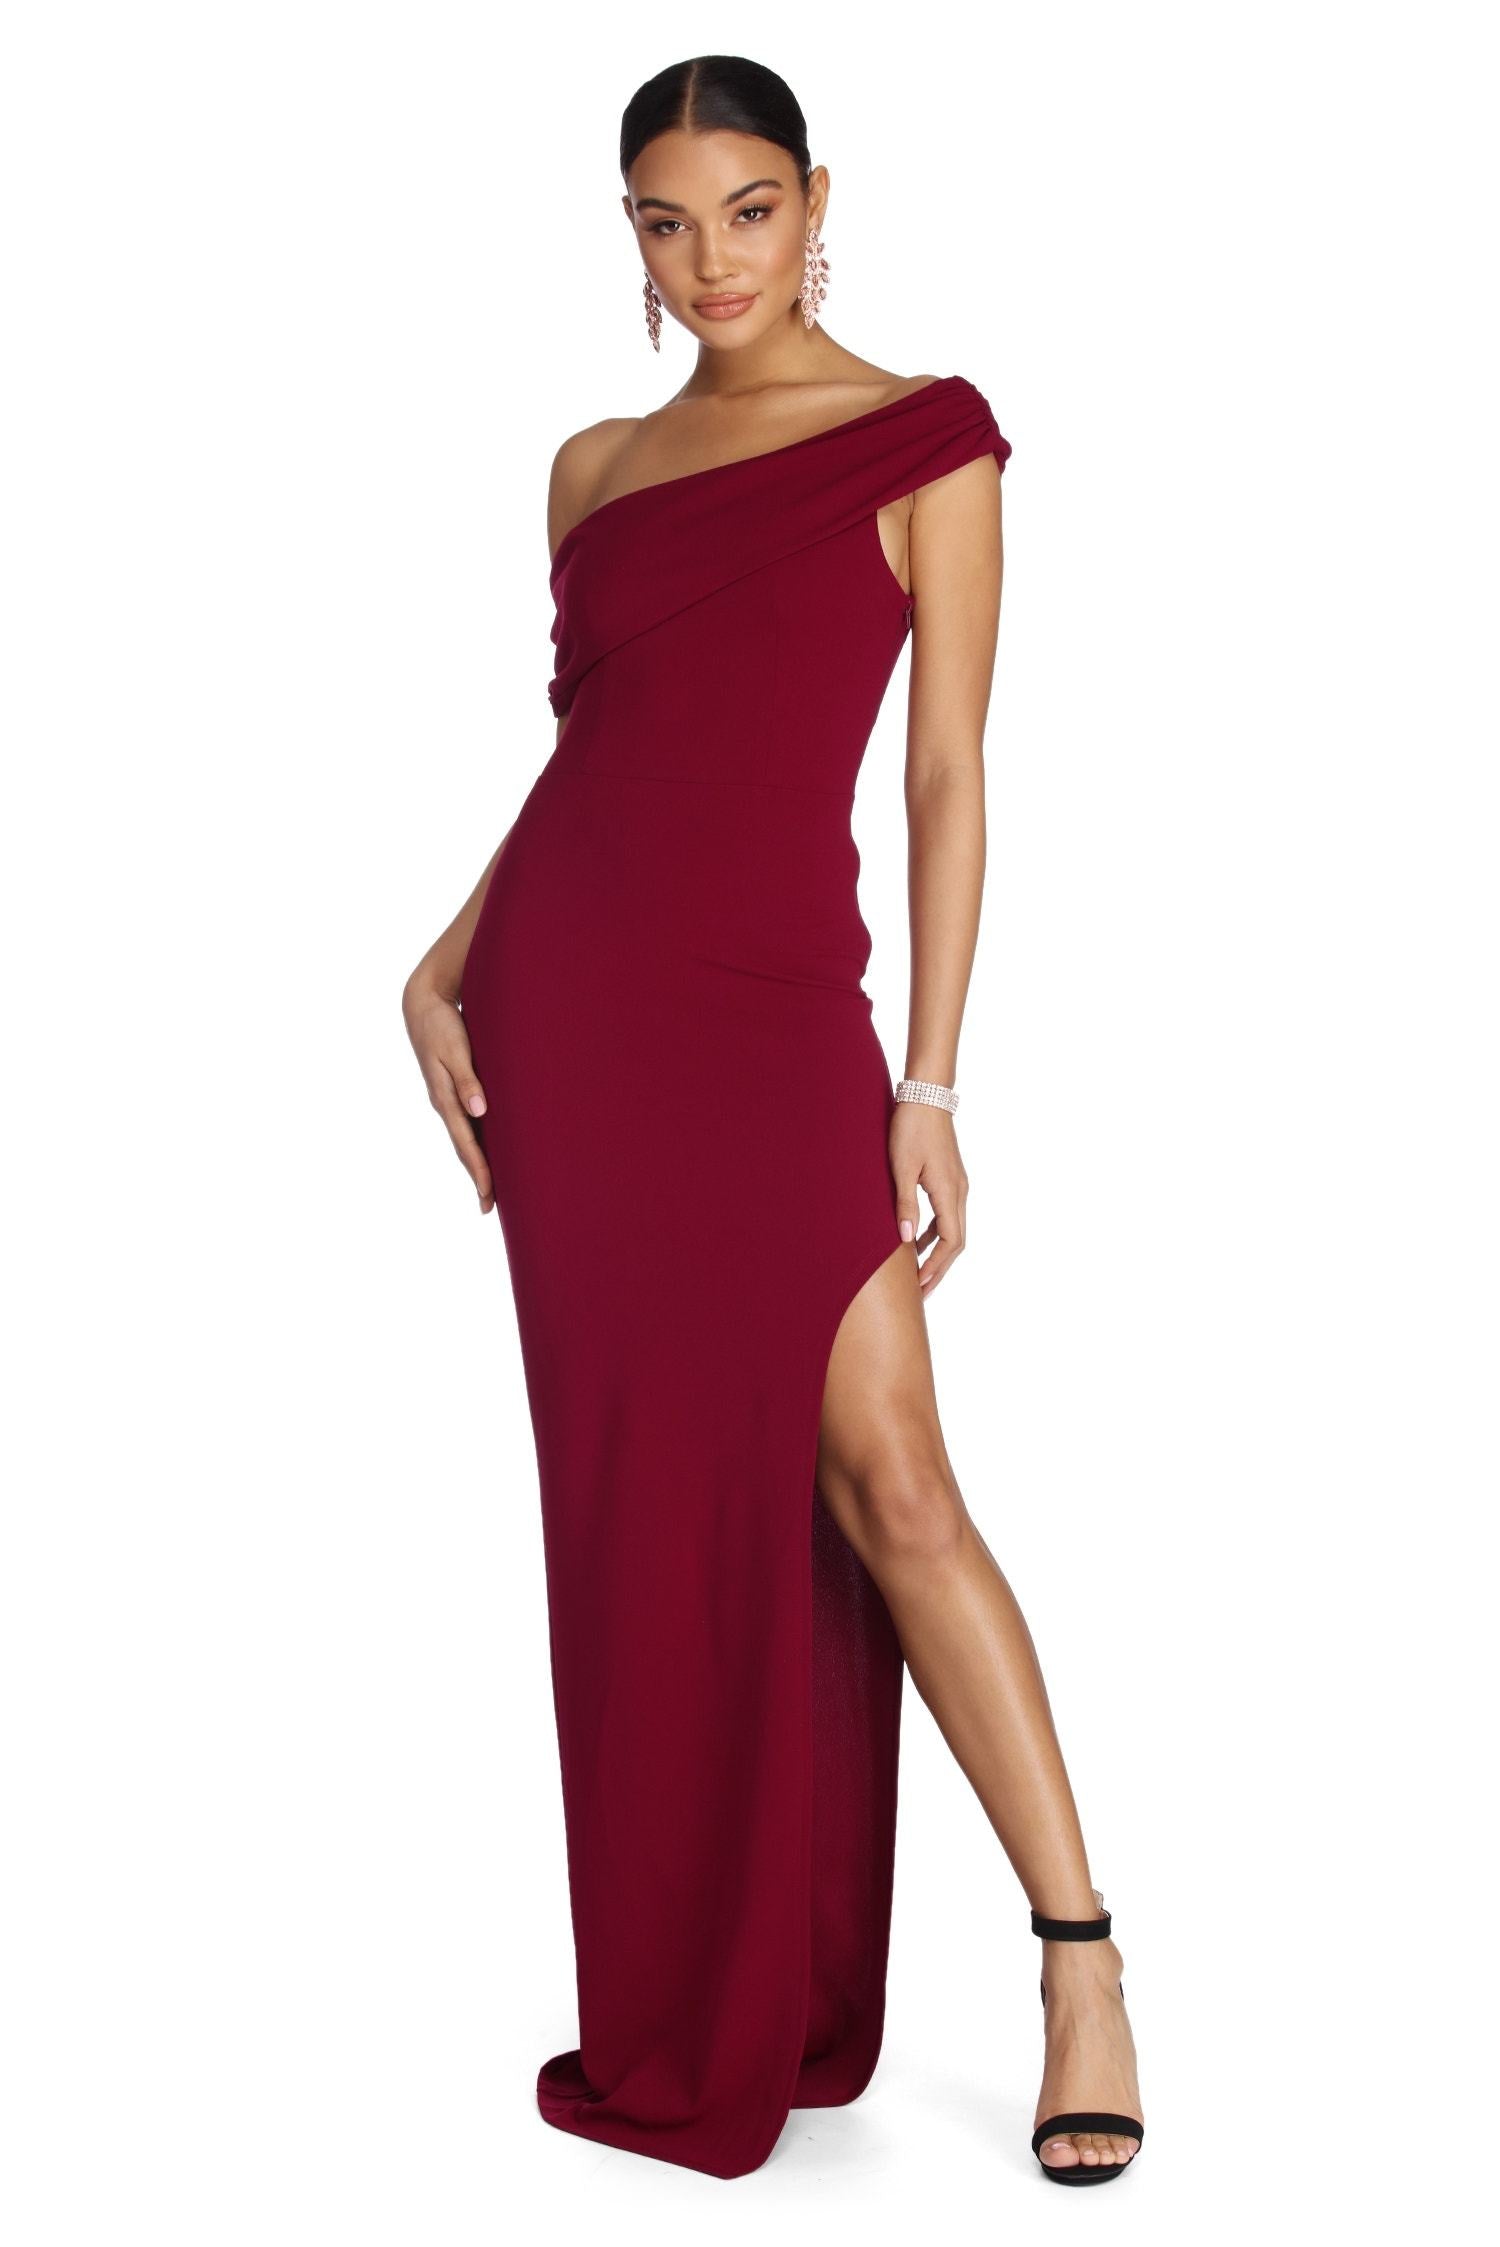 Althea Formal One Shoulder Dresses